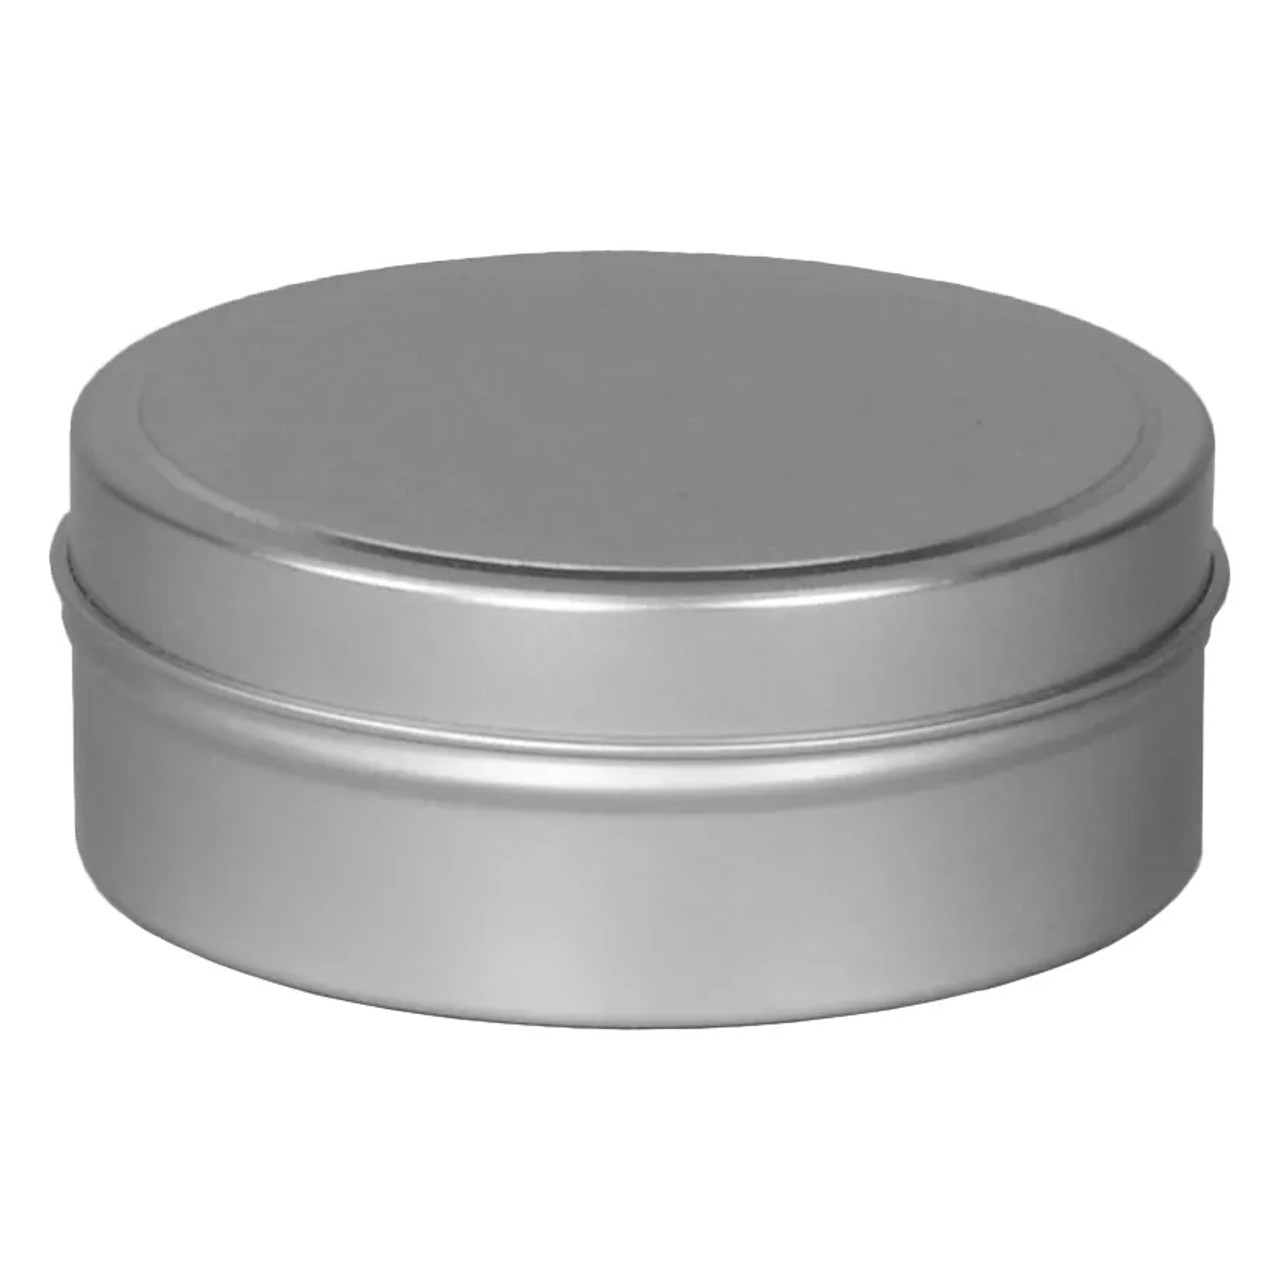 3 1/2 Diameter (6 oz.) Shallow Round Seamless Tin Collection